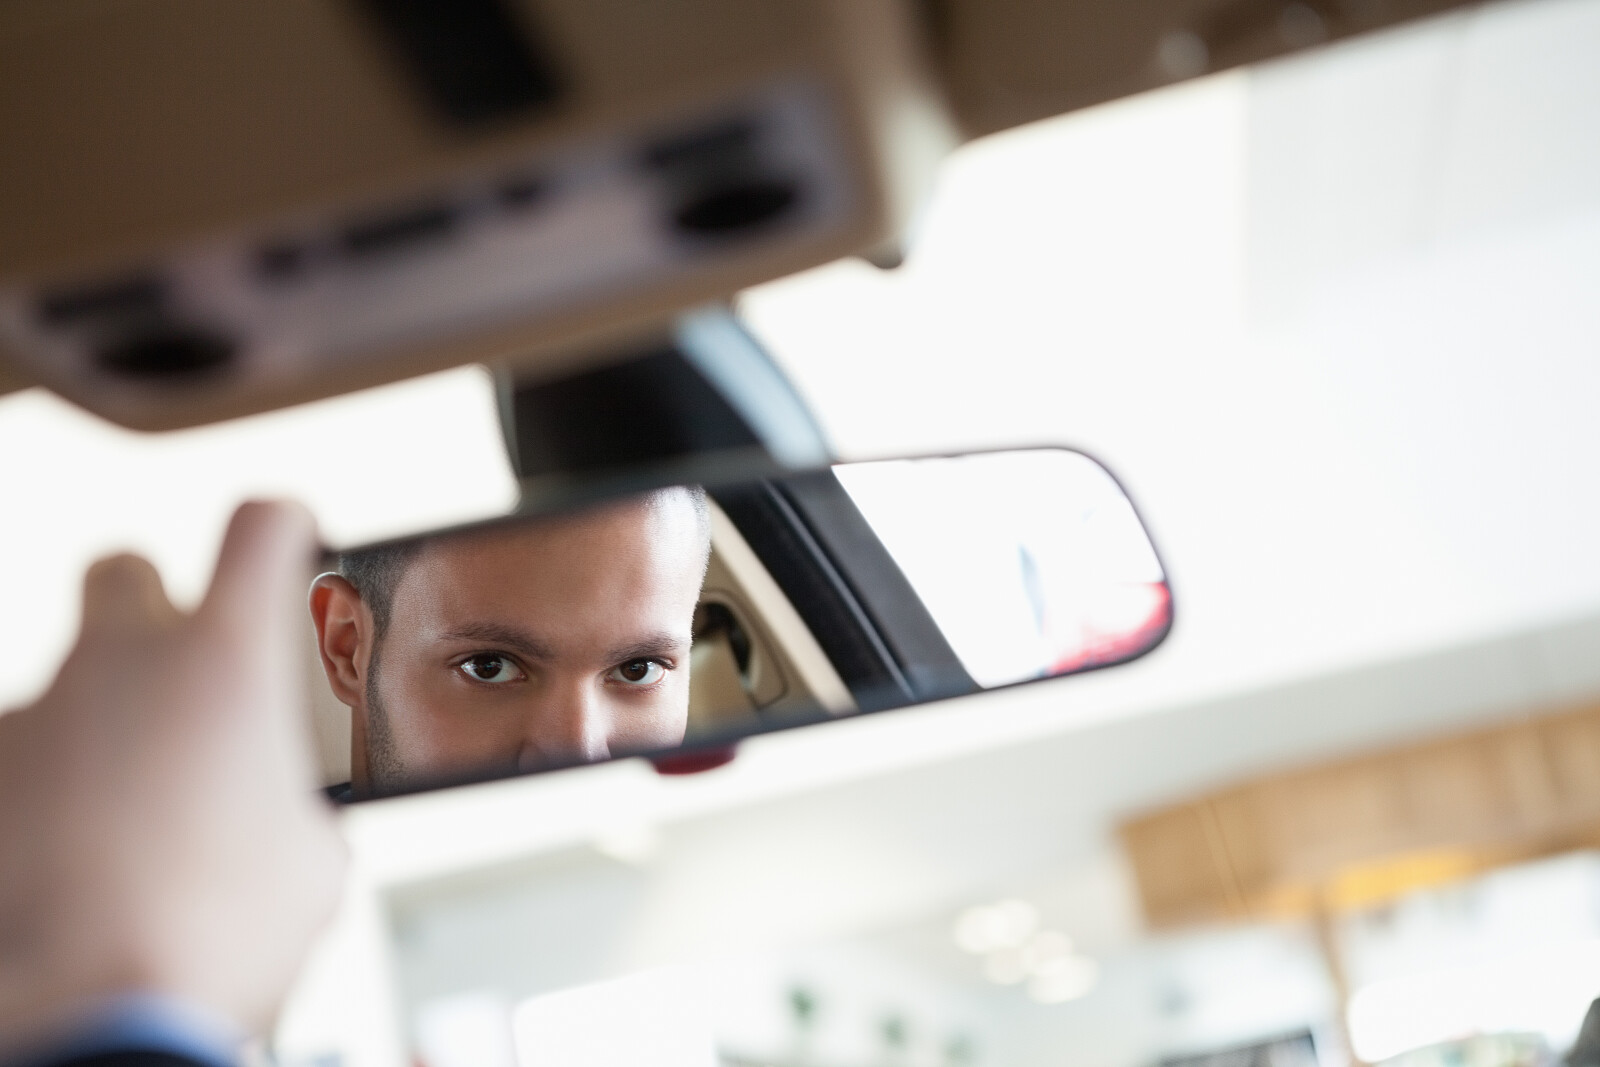 Водитель смотрит в зеркало. Человек машина на зеркало. В зеркале машины мужчина. Человек смотрит в зеркало машины.